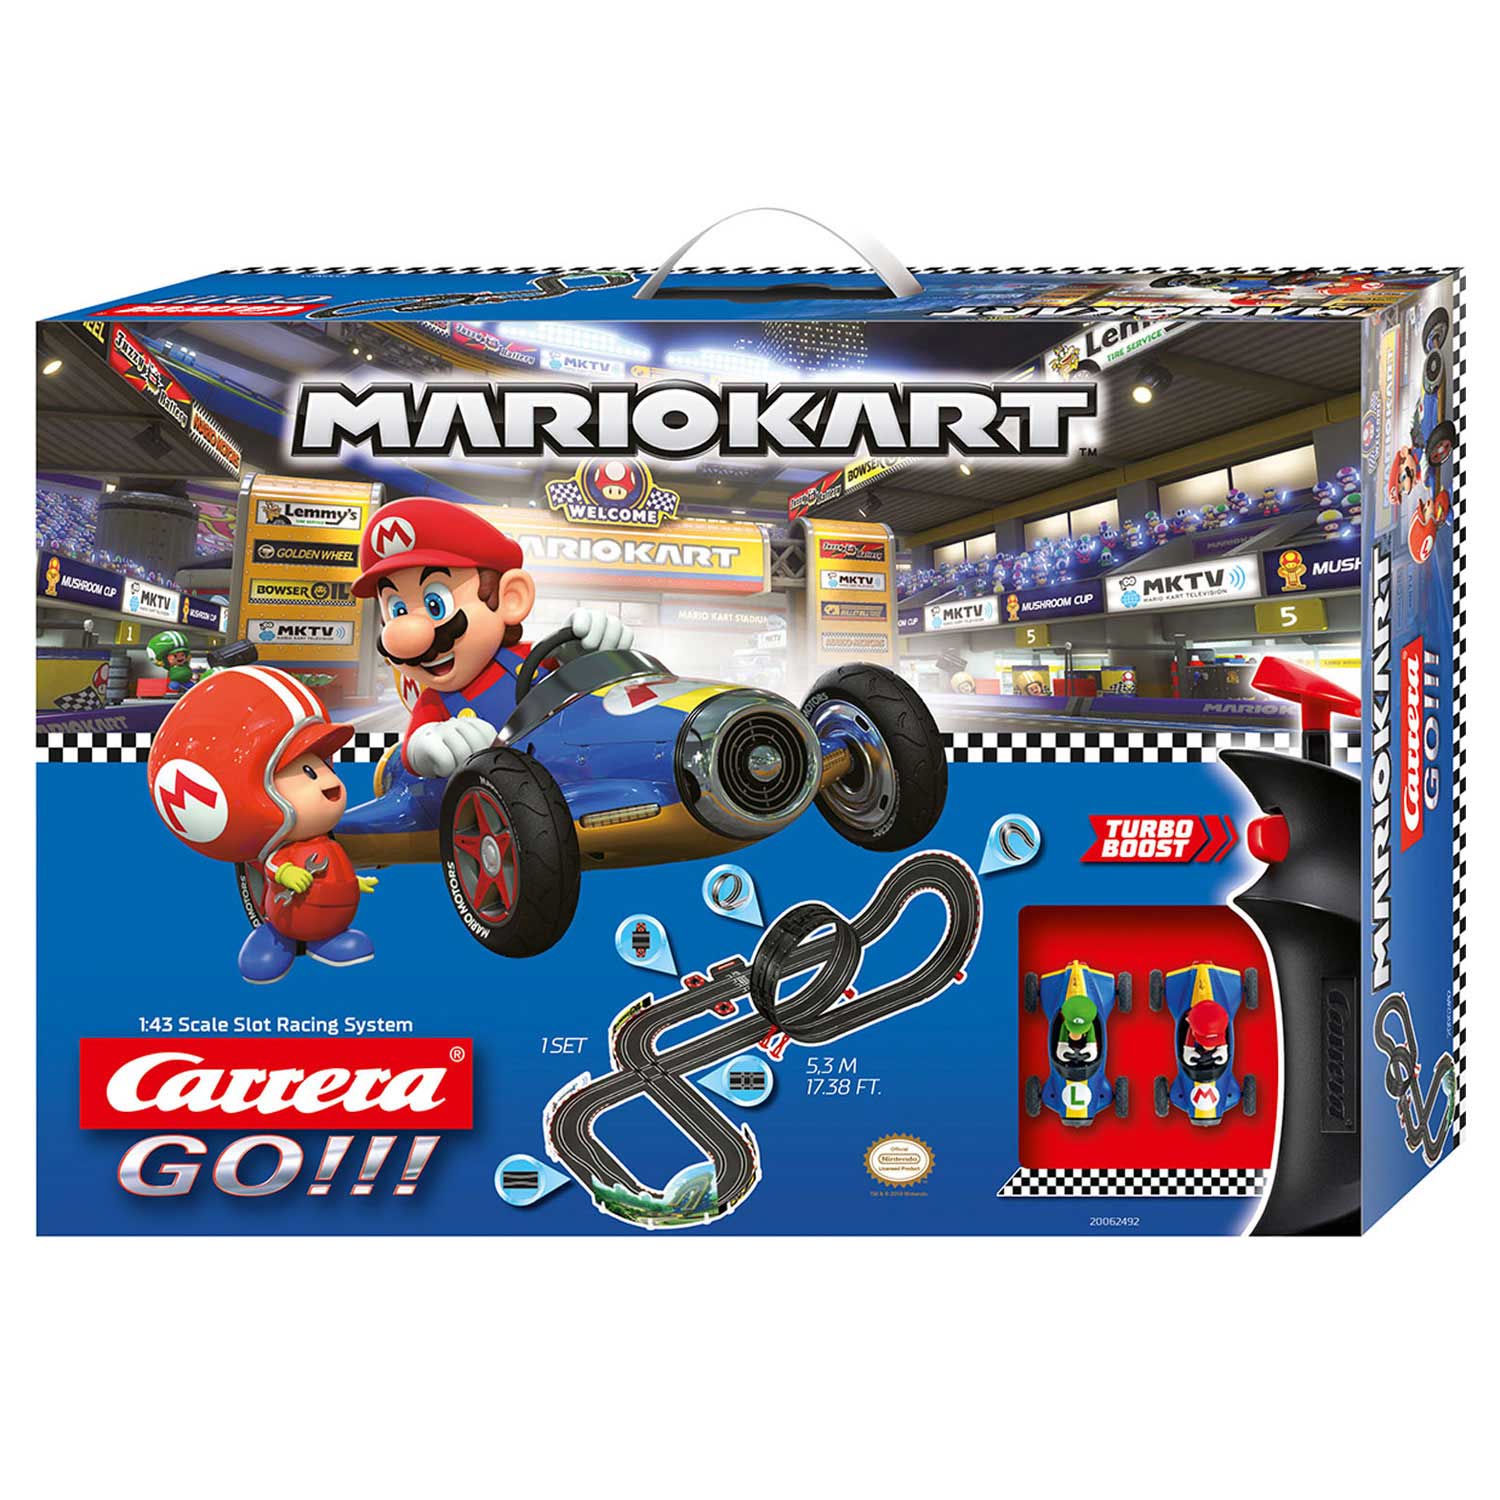 vertraging mooi Renaissance Carrera GO!!! Racebaan - Mario Kart 8 online kopen? | Lobbes Speelgoed